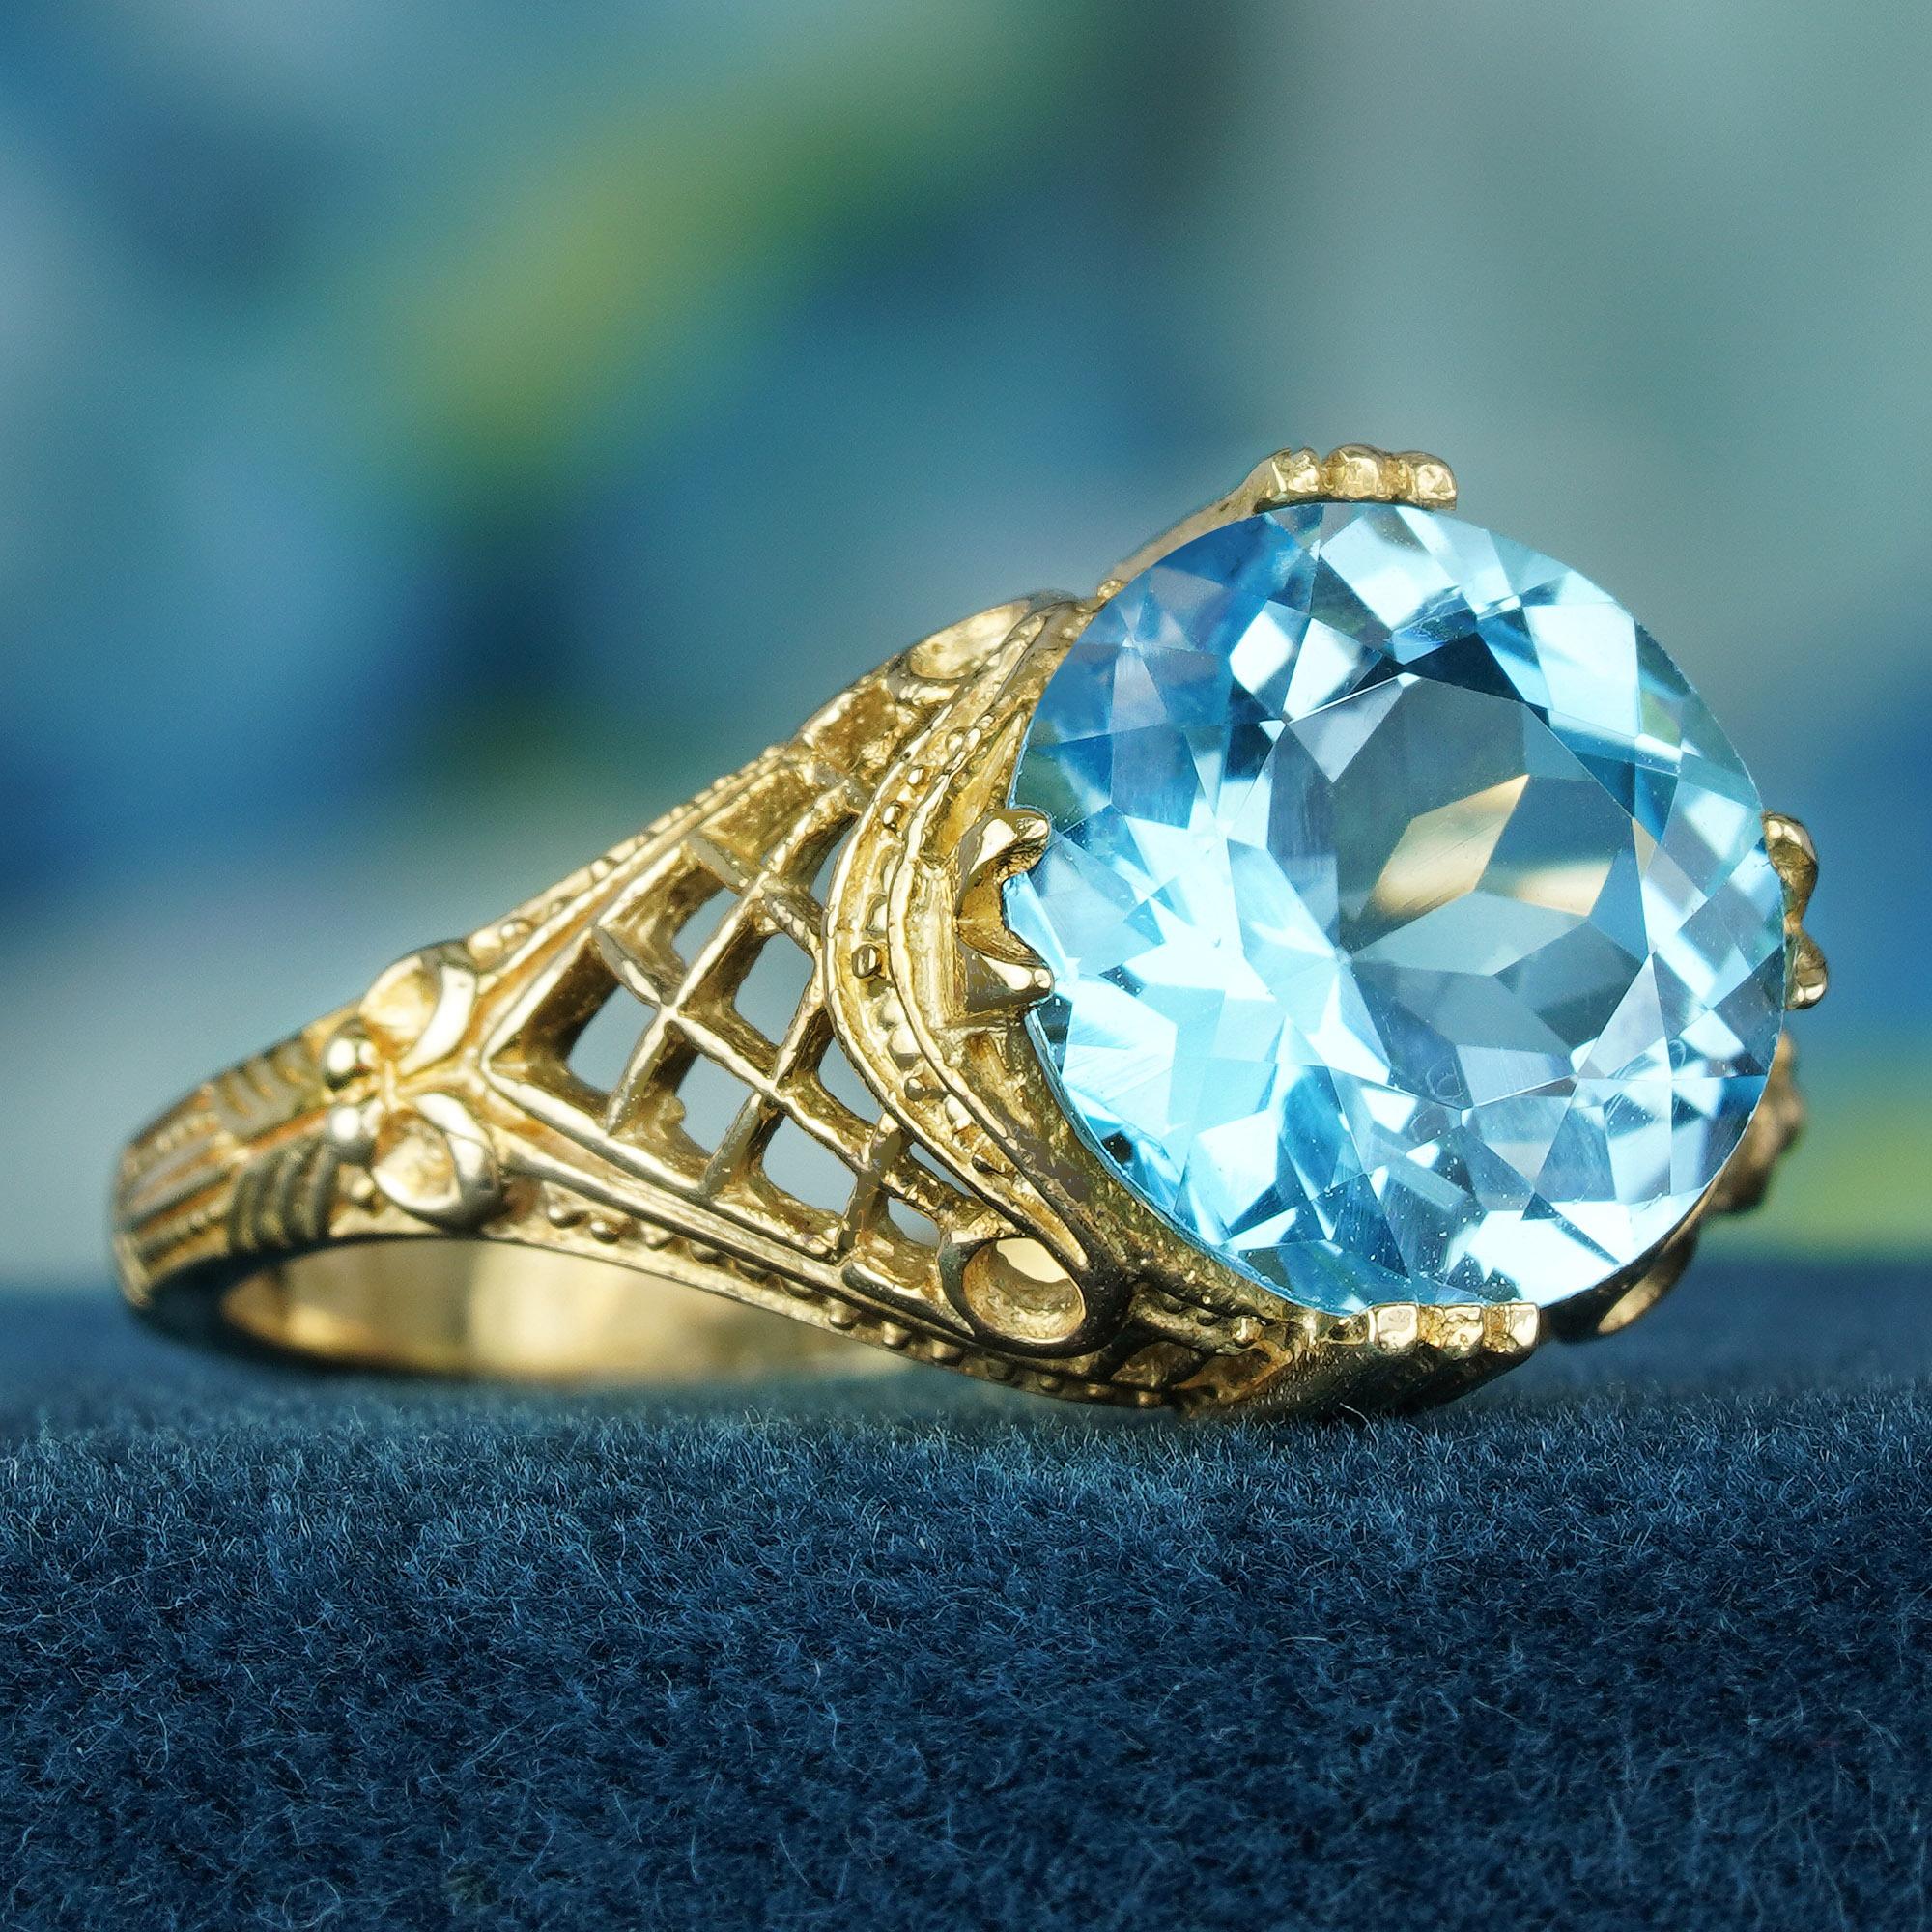 Der 4,5-karätige Blautopasring besticht durch faszinierende Details und strahlt mühelos einen dauerhaften Sinn für Eleganz aus. Die zeitlose Anziehungskraft wird durch die Kombination aus einem traditionellen Gelbgoldband, einem kunstvollen